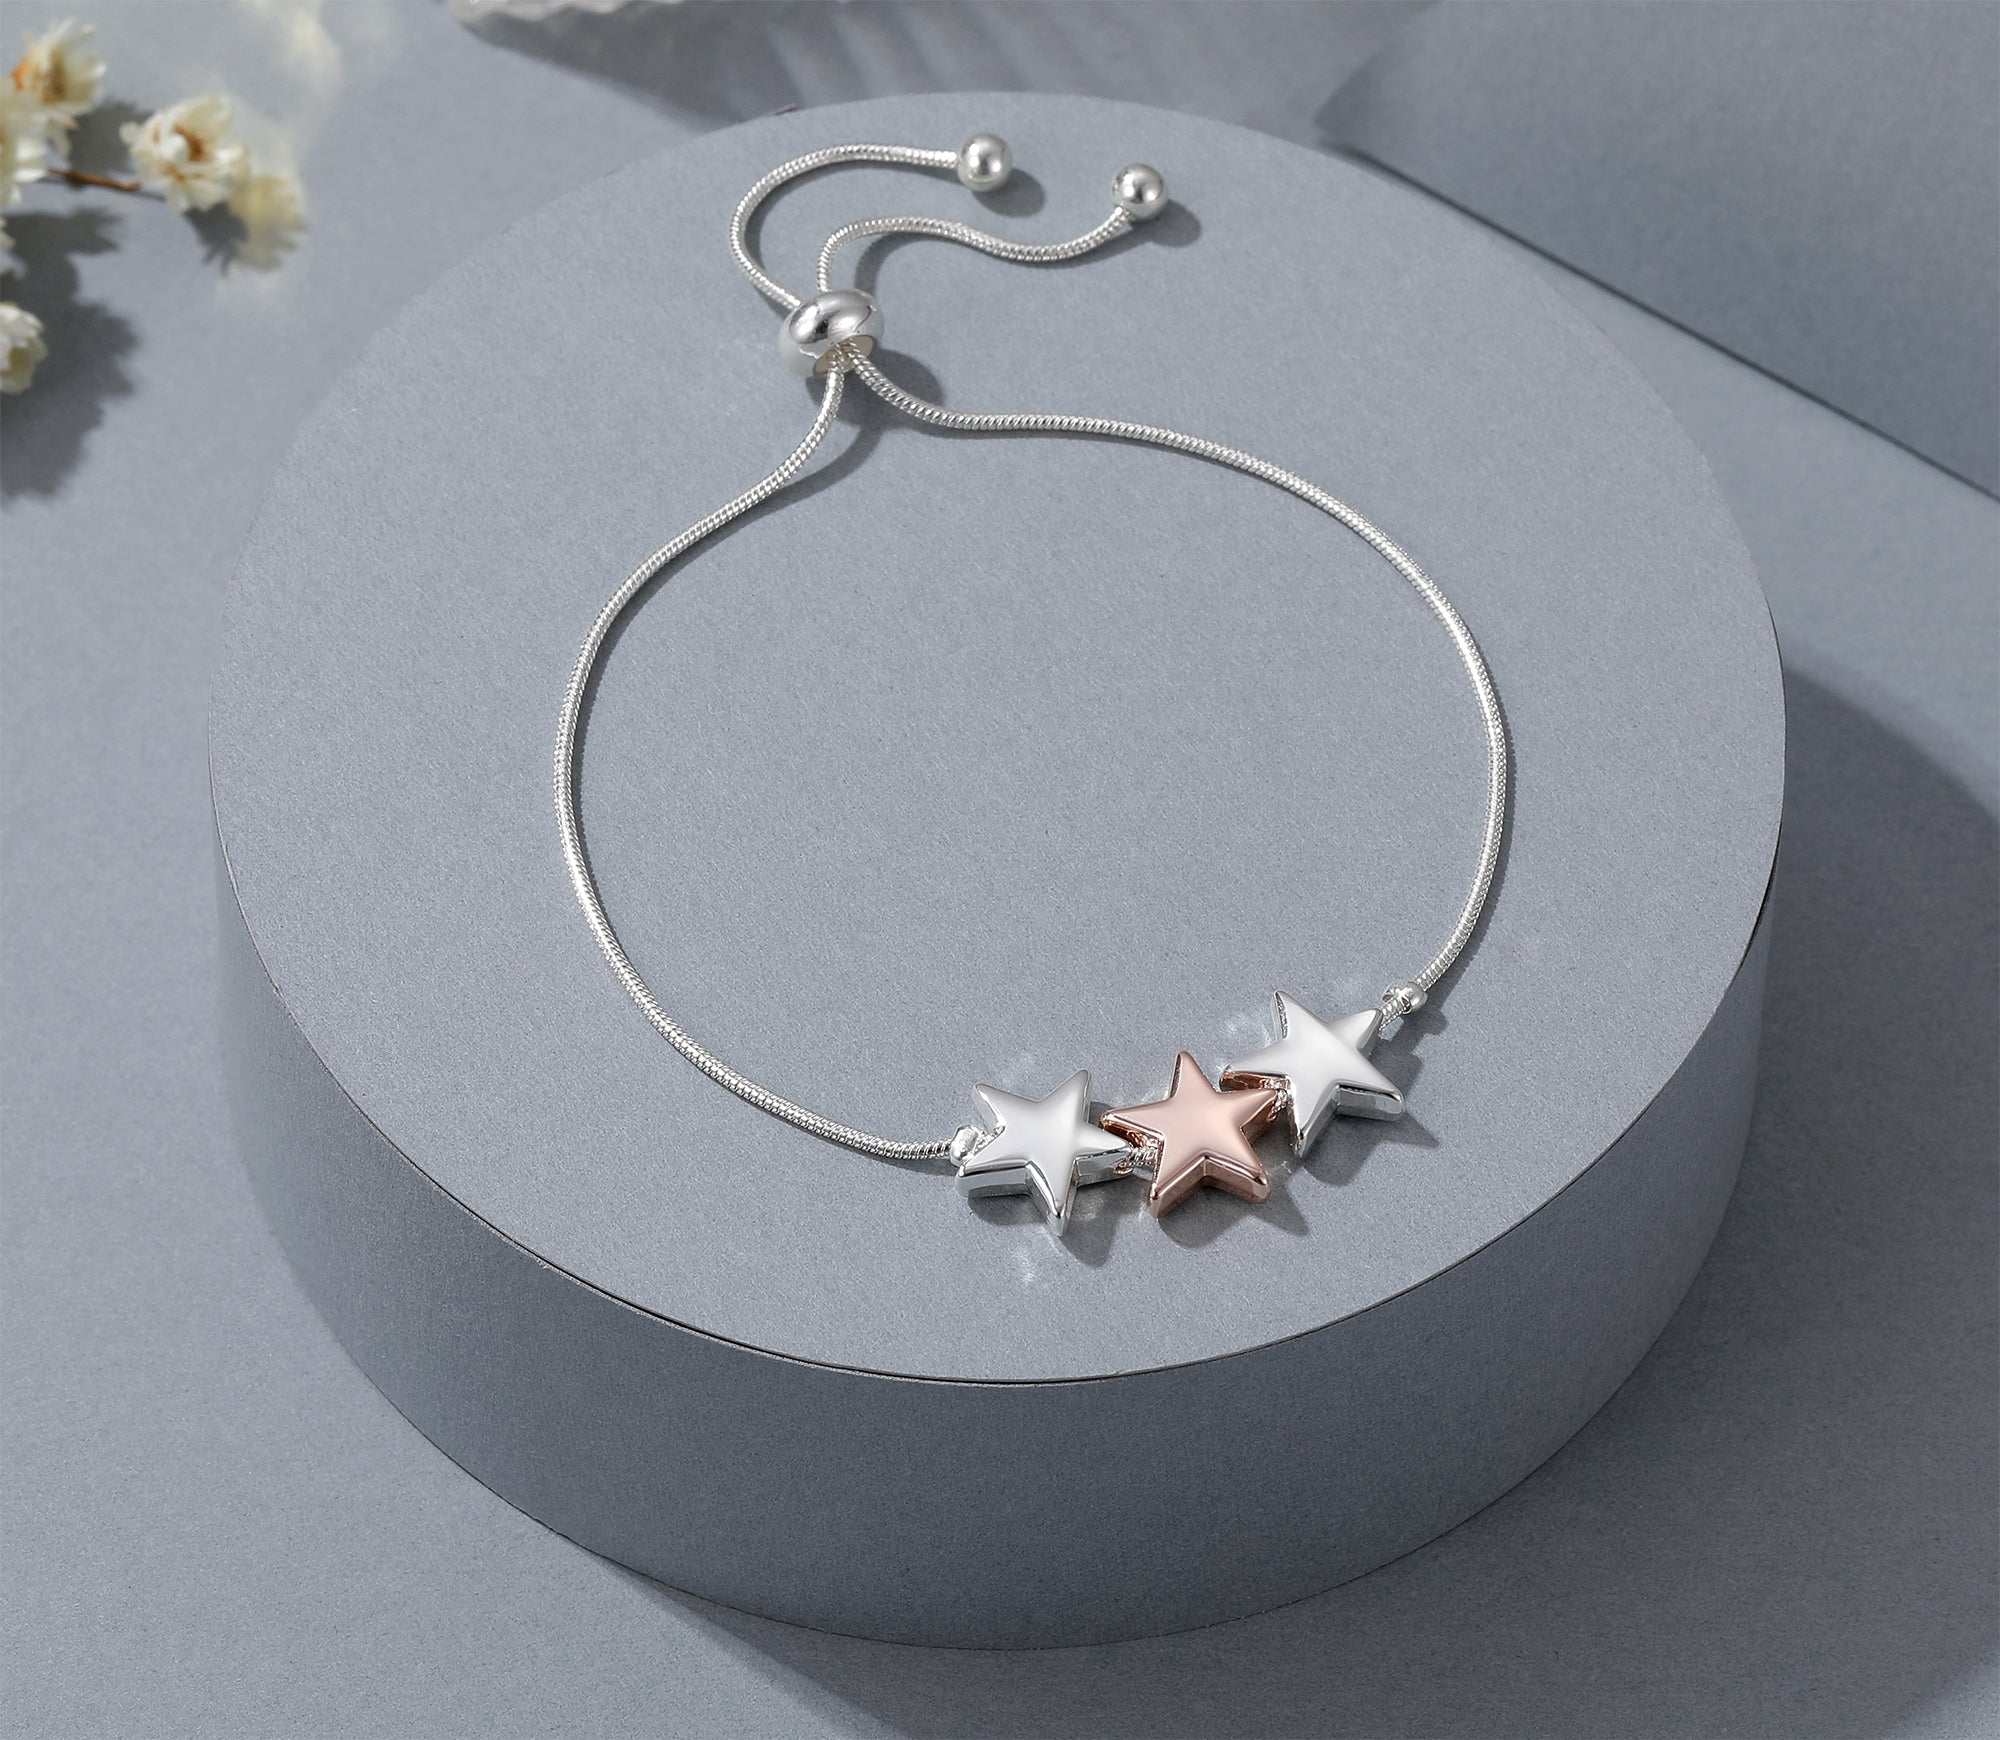 Adjustable 3 star bracelet - rose gold and silver